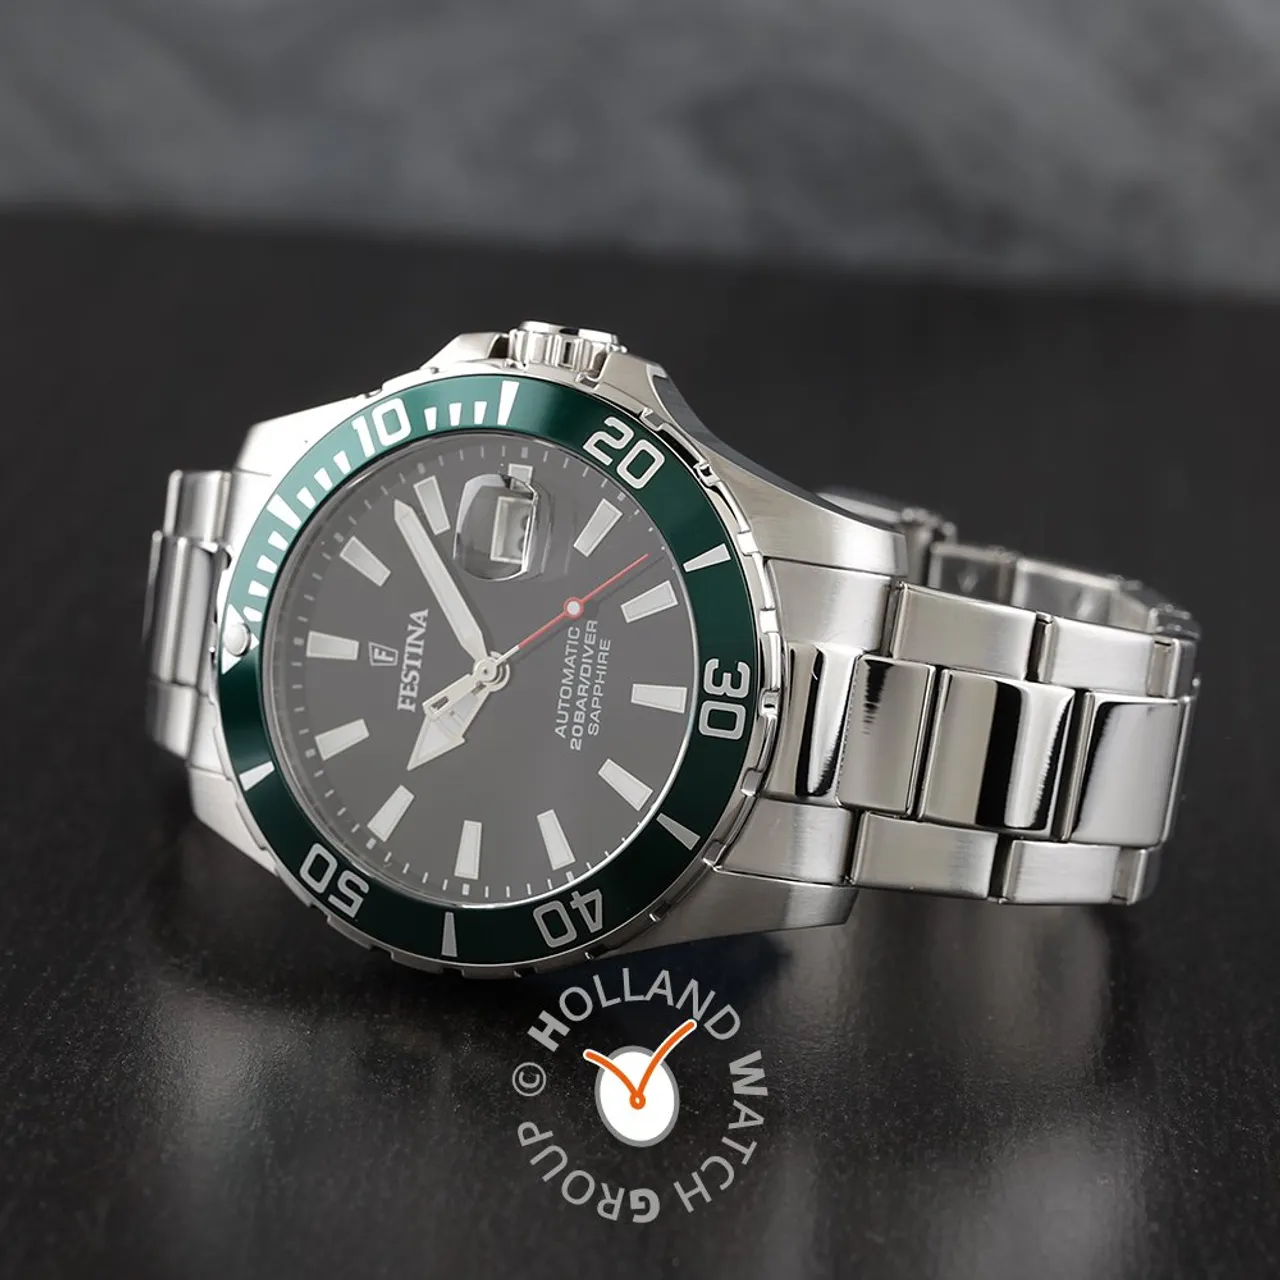 Festina F20531/2 Automatic Diver Horloge